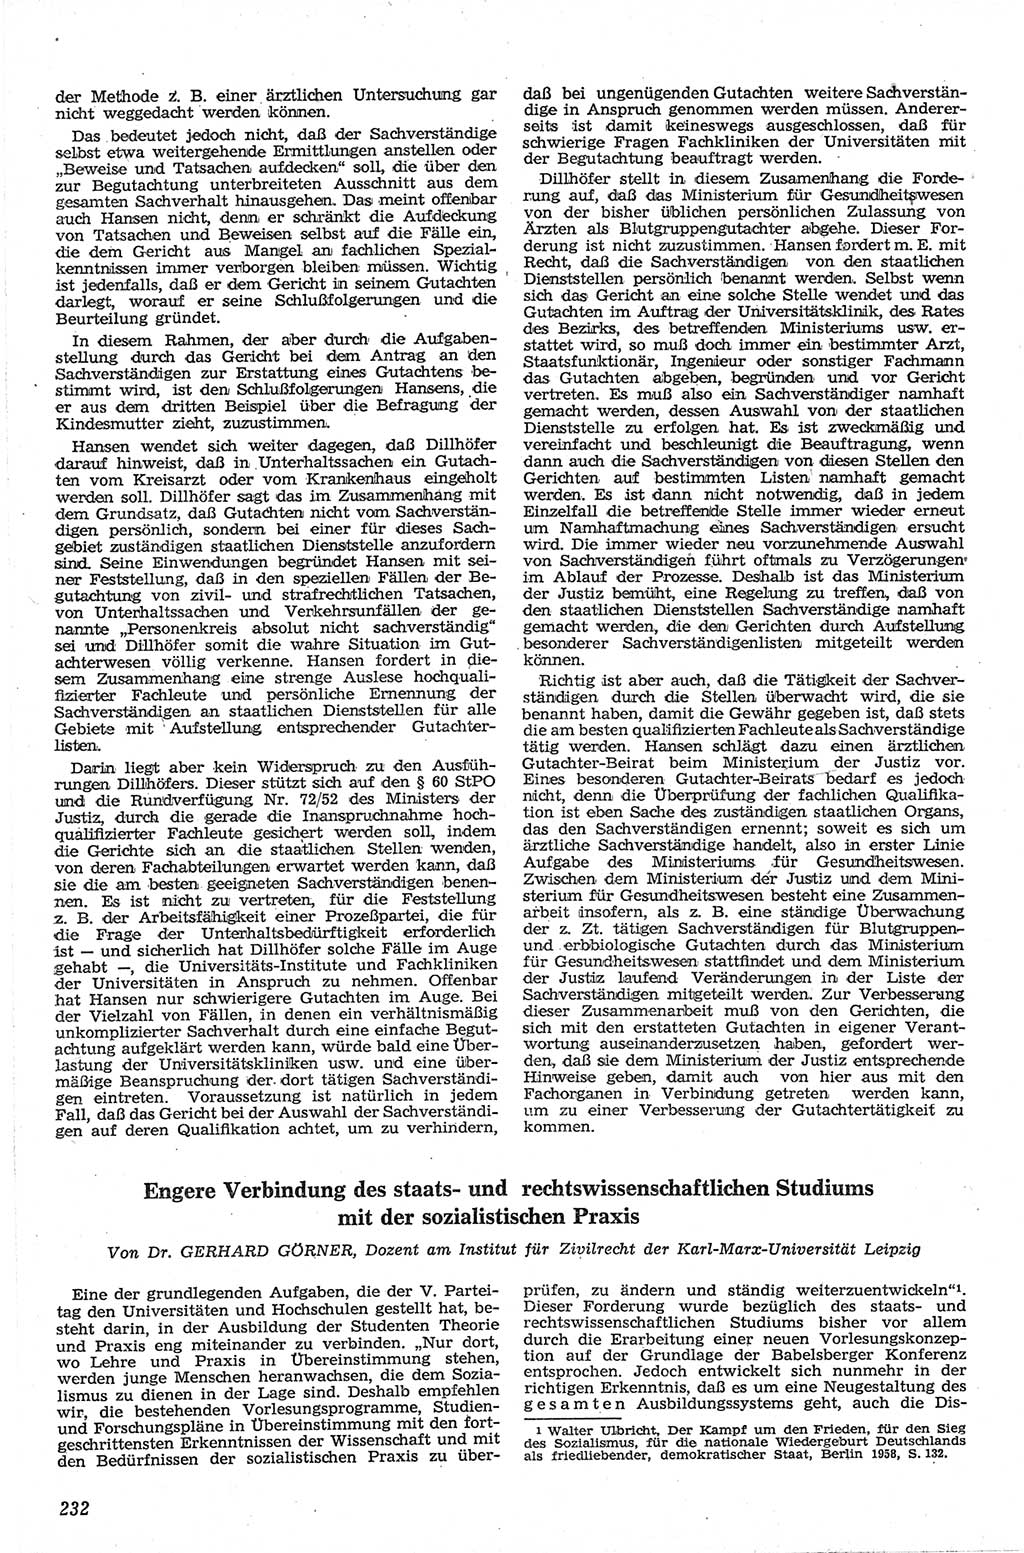 Neue Justiz (NJ), Zeitschrift für Recht und Rechtswissenschaft [Deutsche Demokratische Republik (DDR)], 13. Jahrgang 1959, Seite 232 (NJ DDR 1959, S. 232)